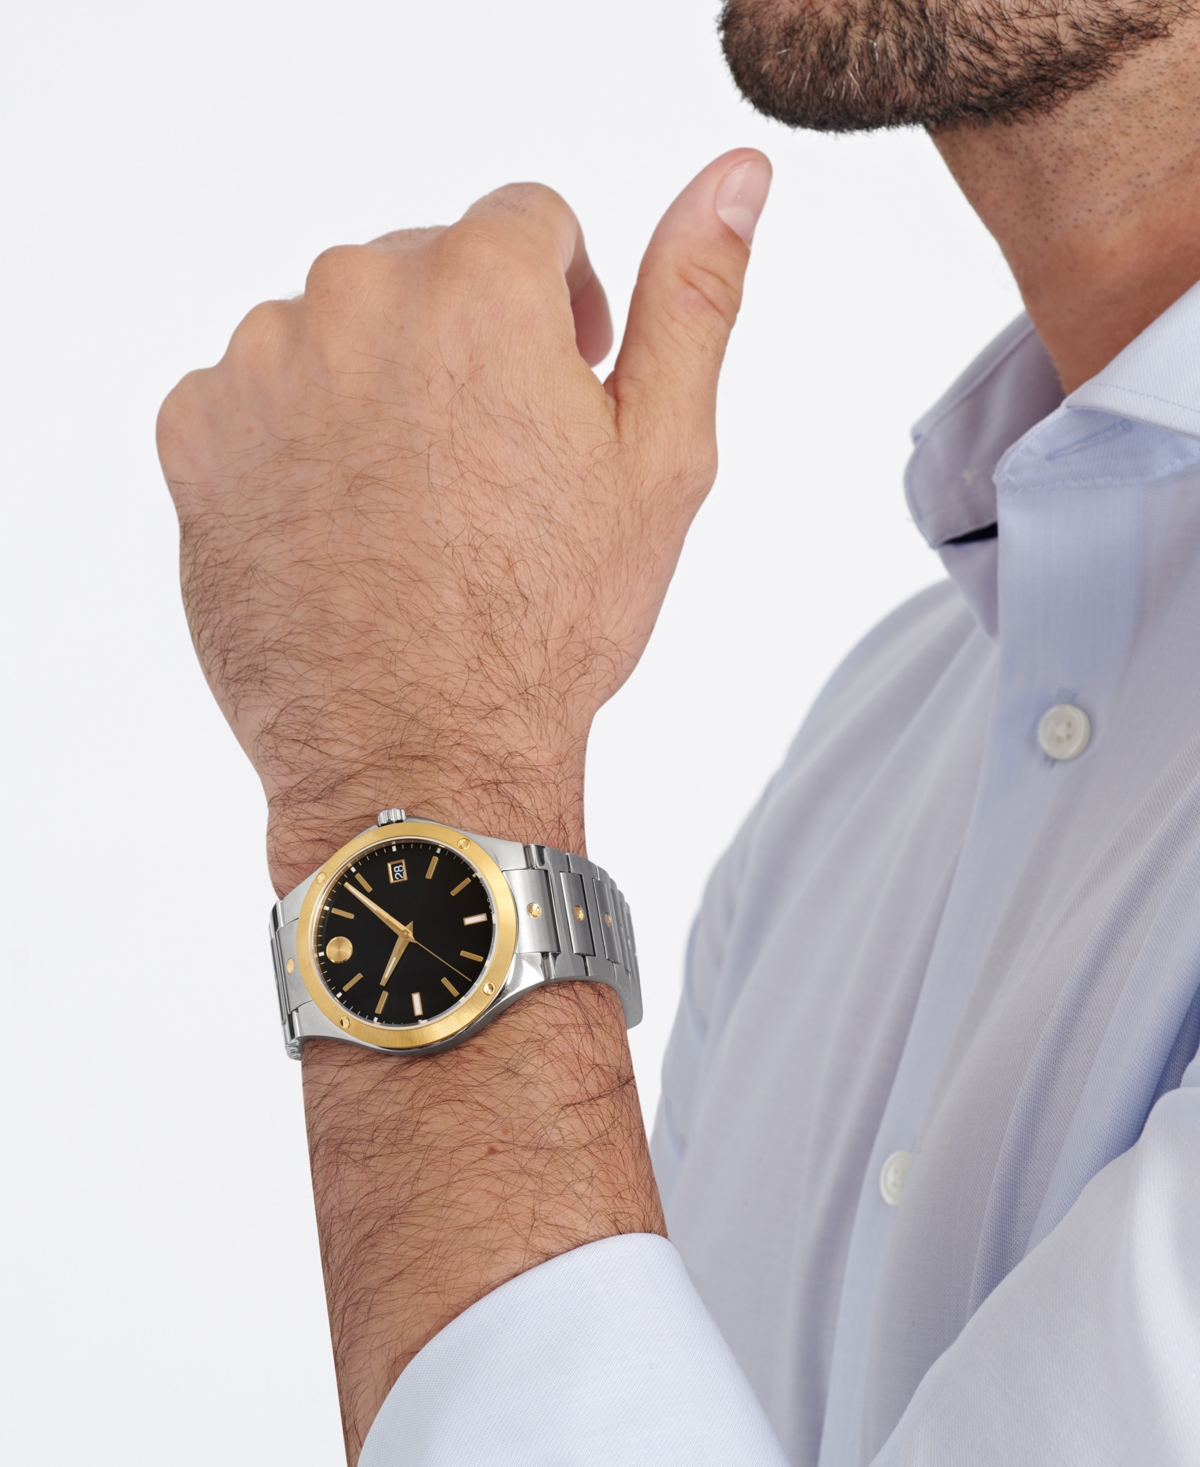 Shop Movado Se Men's Swiss Two-tone Stainless Steel Bracelet Watch 41mm